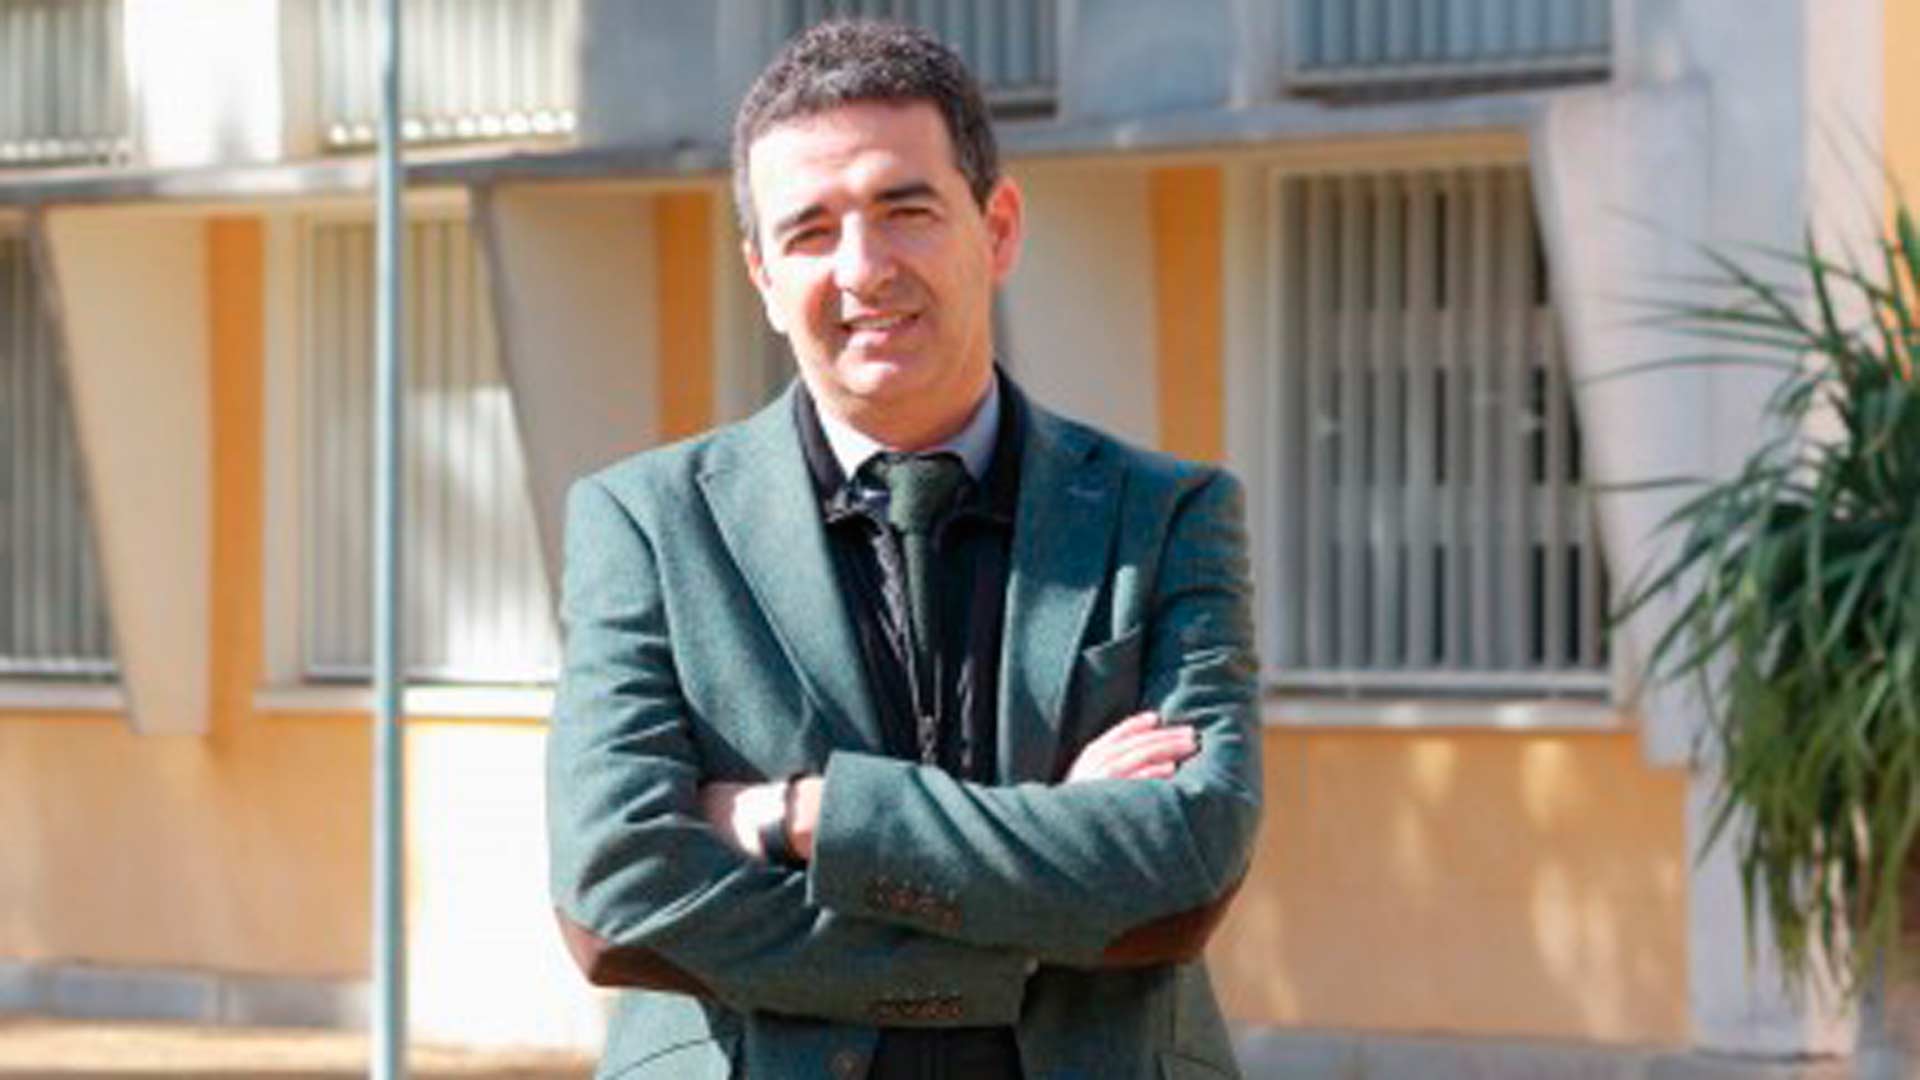 Dimite el secretario de Justicia de la Junta de Andalucía por robarle unas joyas a su suegra